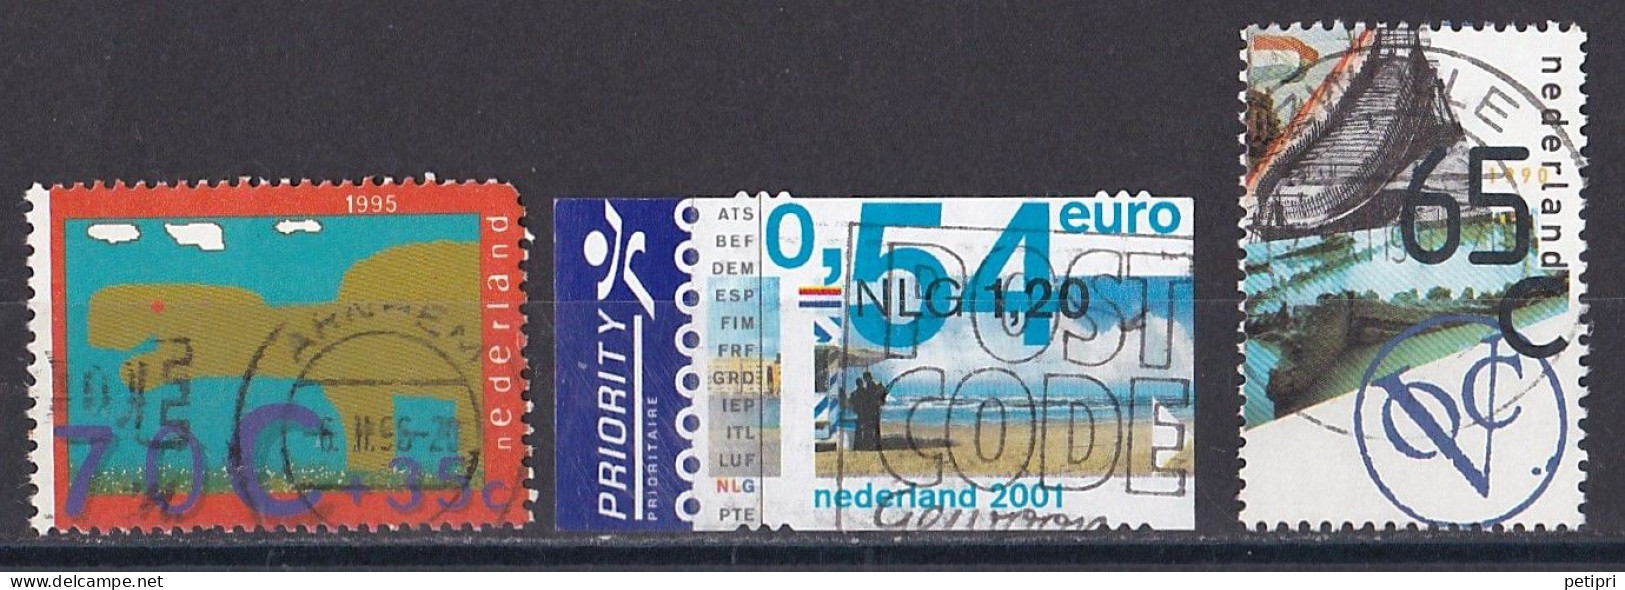 Pays Bas - 1990 - 1999  ( Béatrix )   Y&T  N °  1658  1903  1990  Oblitéré - Used Stamps